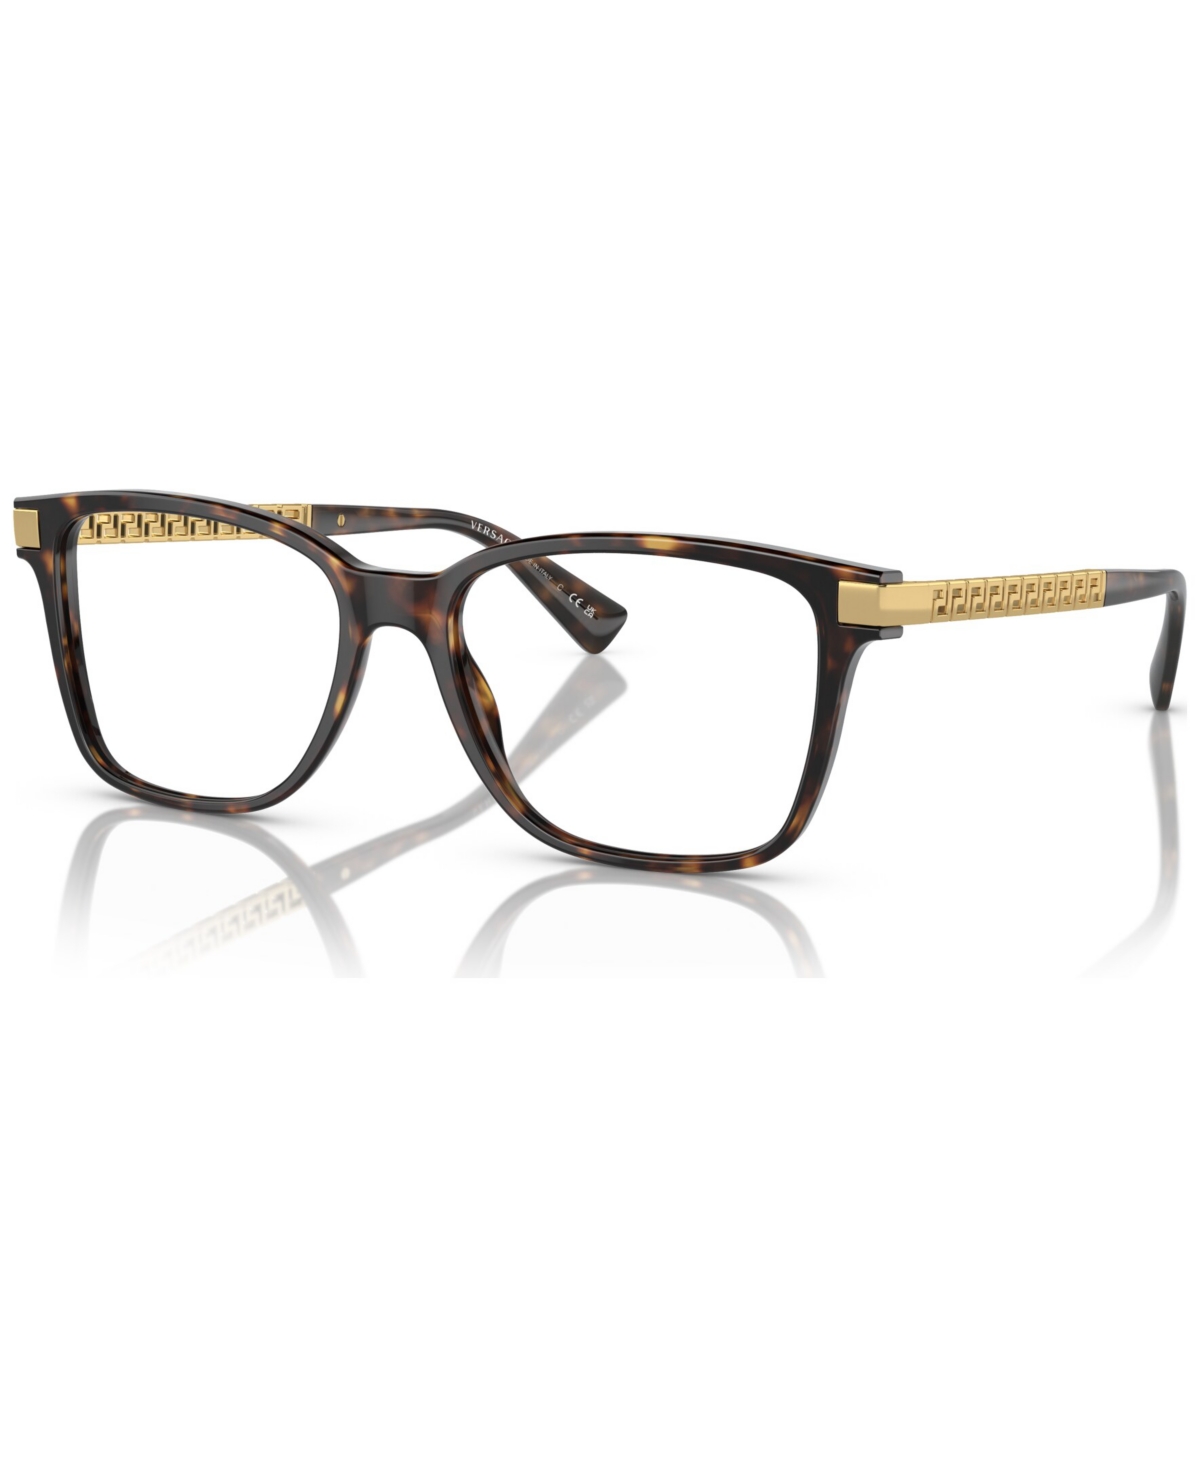 Men's Eyeglasses, VE3340U 55 - Havana